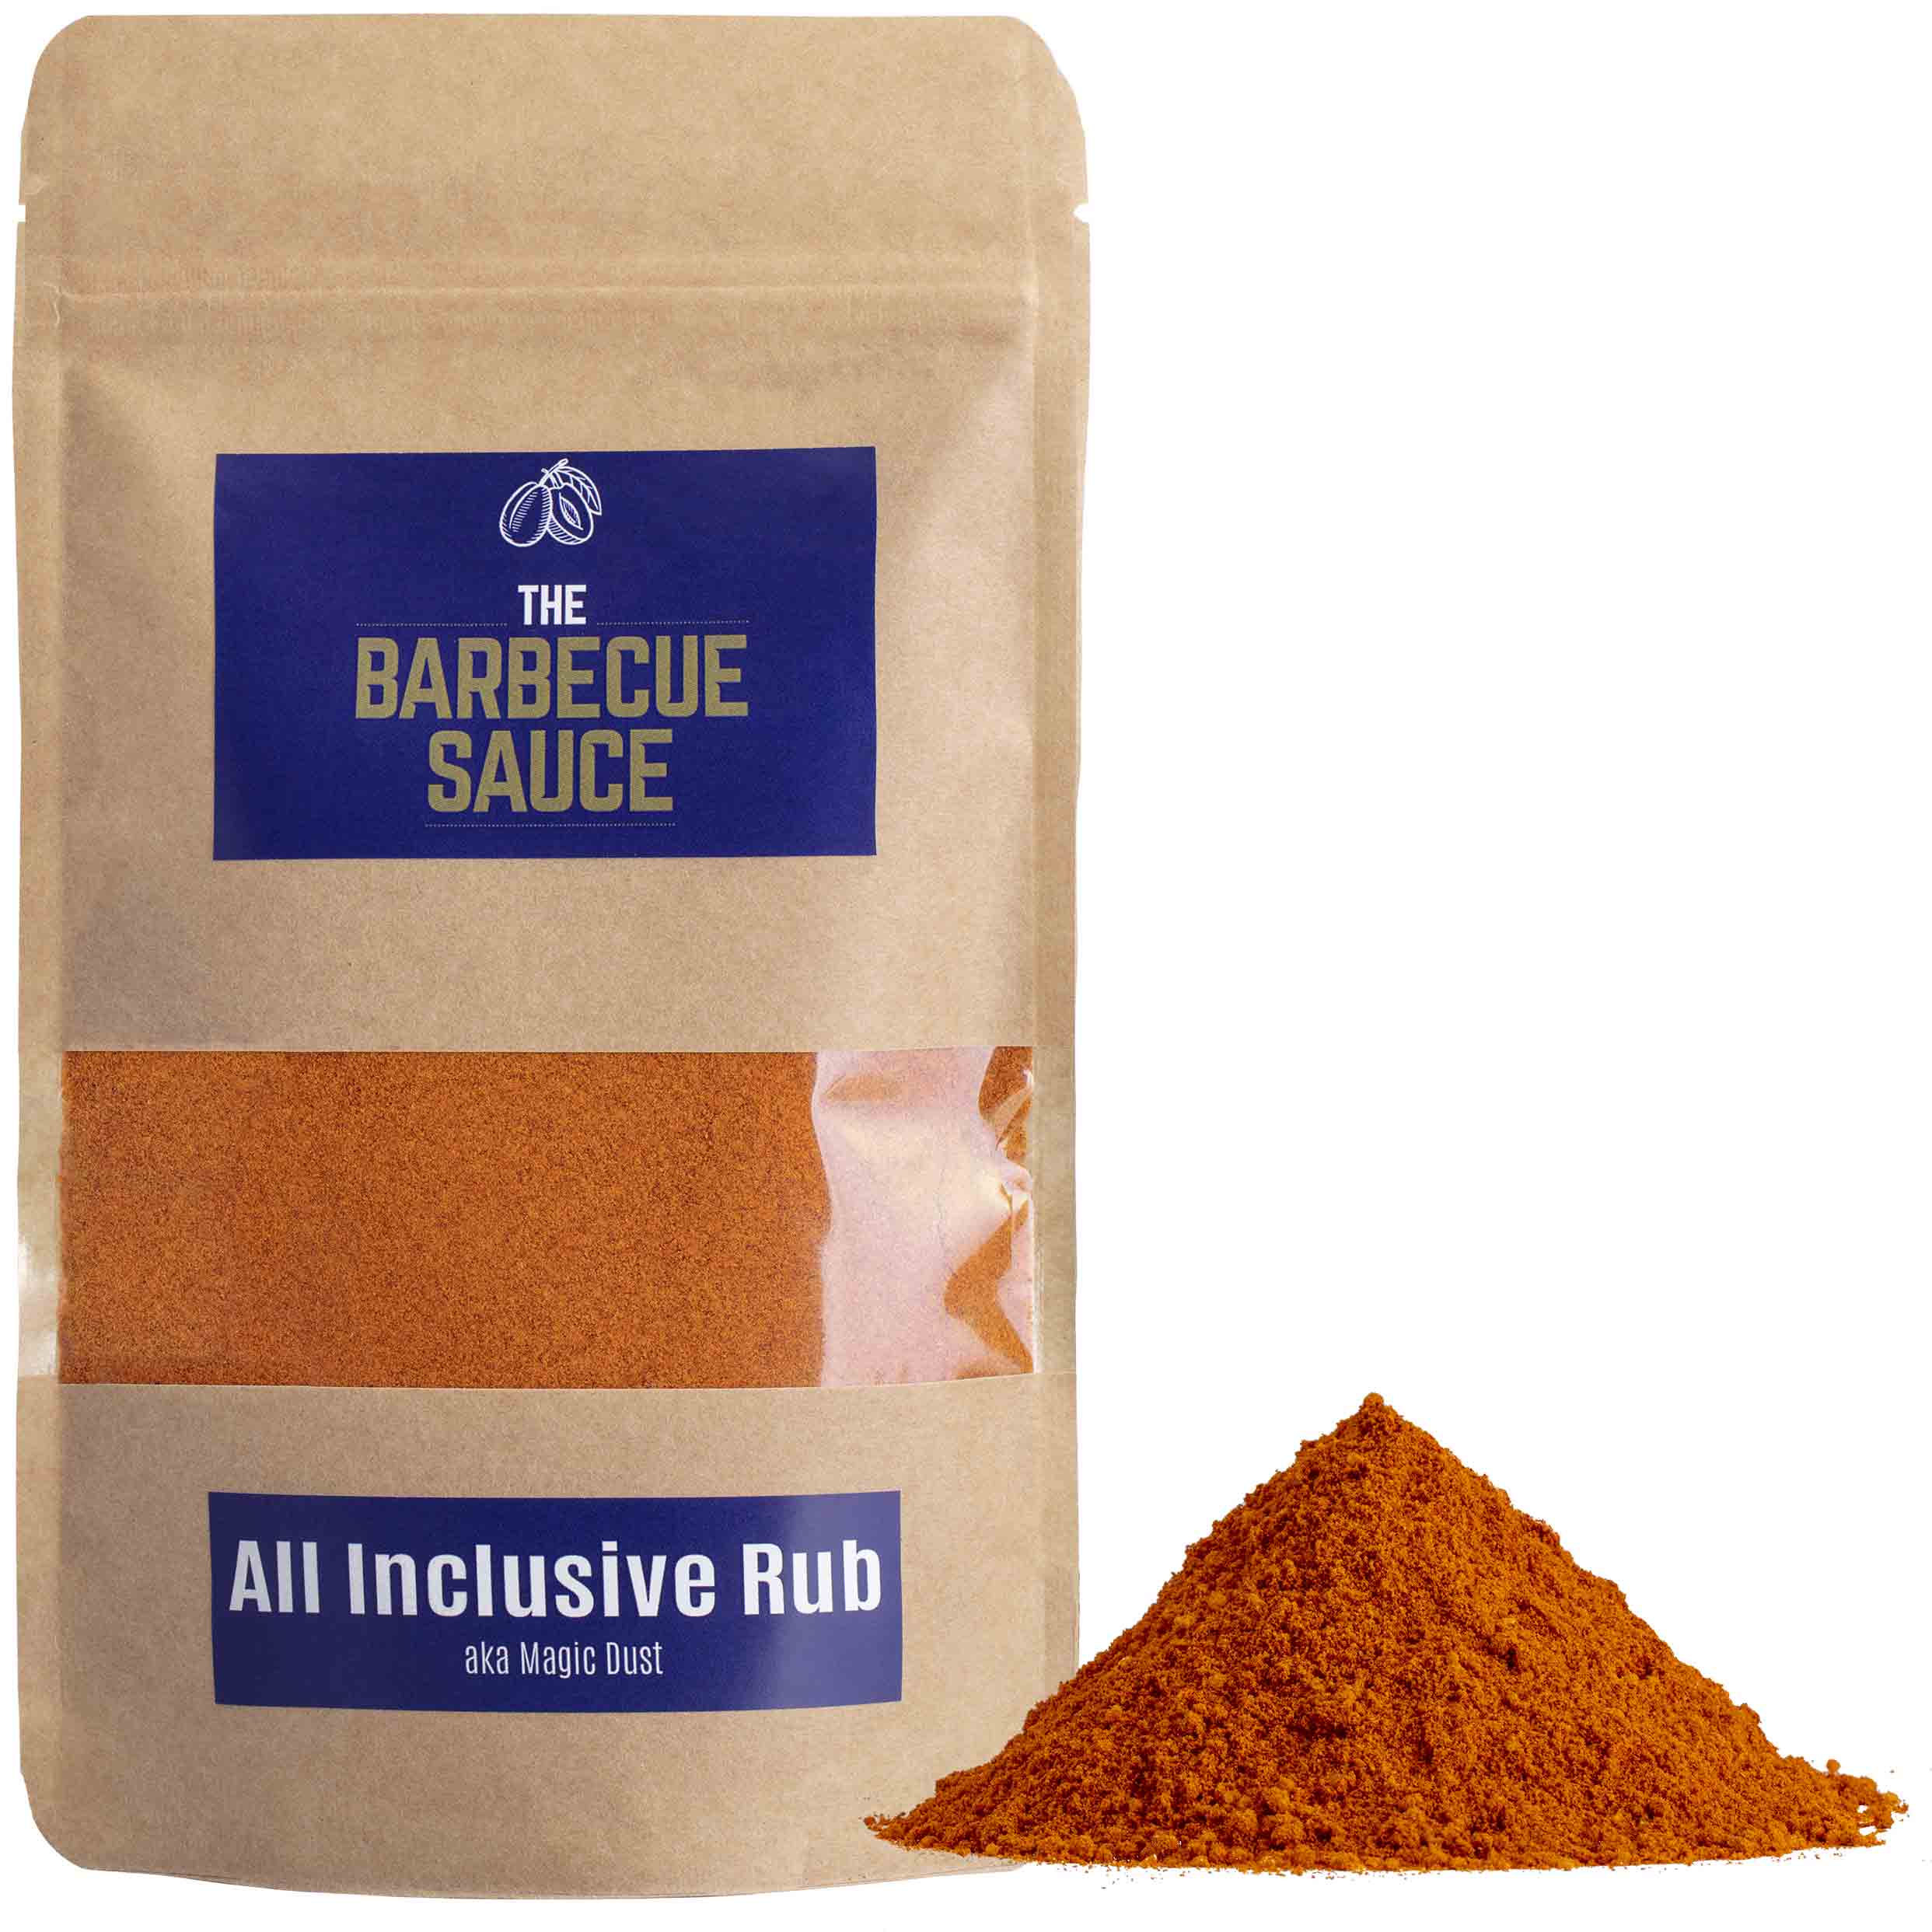 All Inclusive Rub - Magic Dust ist der Klassiker und das universelle aller BBQ Gewürze für alle Grill- und BBQ-Liebhaber.